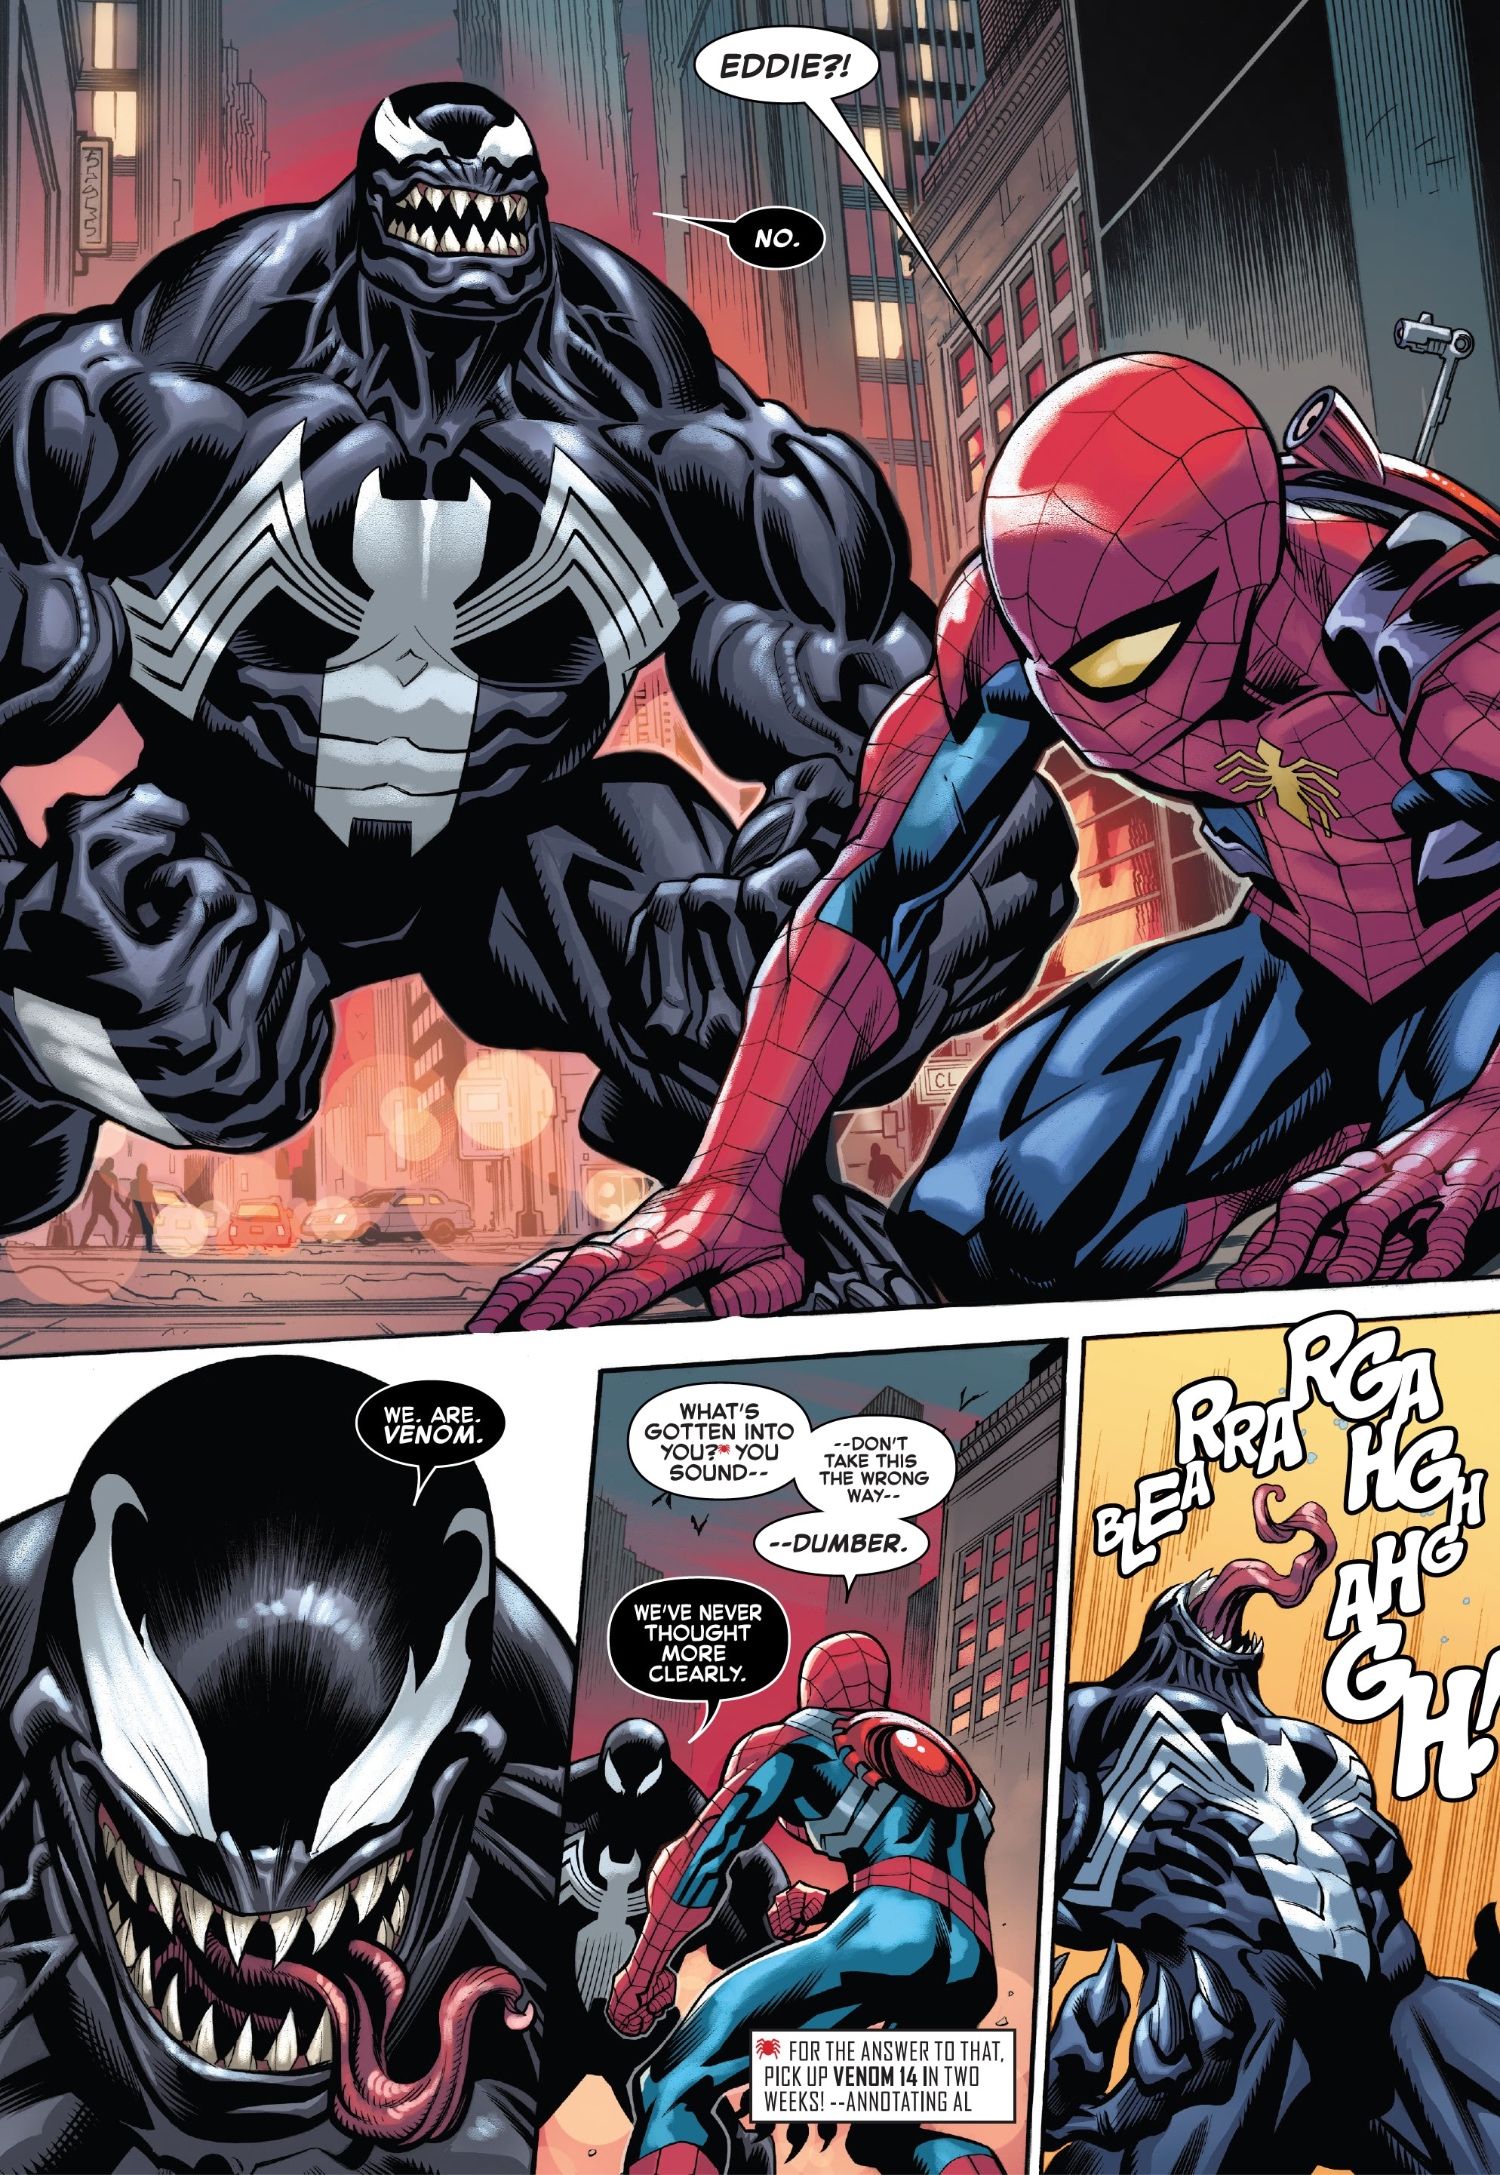 Monster Venom Returns To Fight Spider-Man On The Dark Web